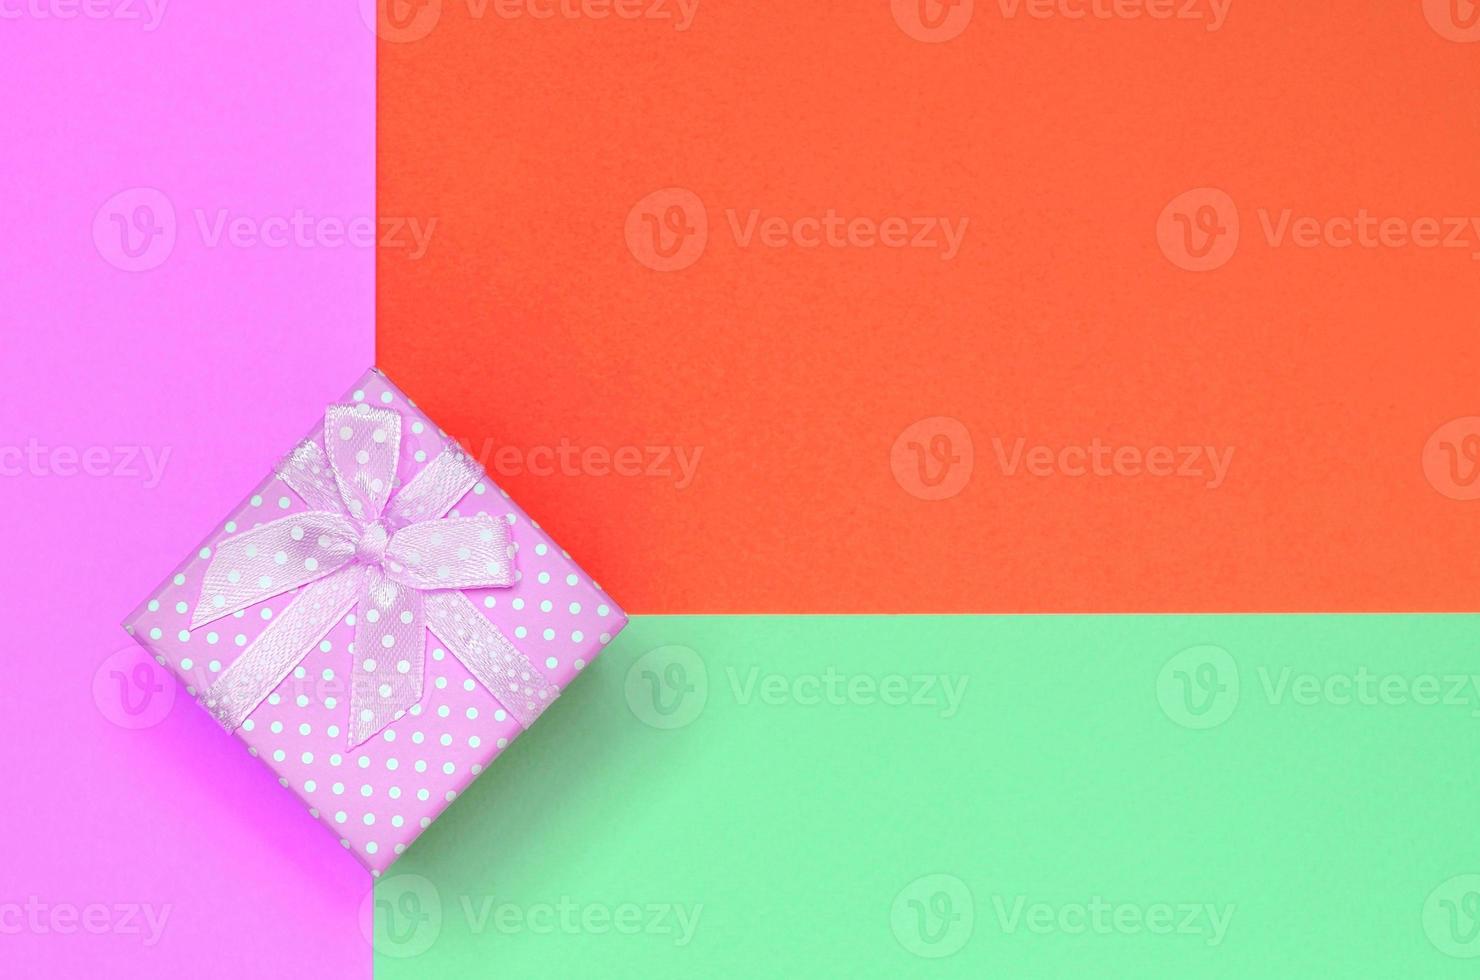 pequena caixa de presente rosa encontra-se no fundo de textura do papel de cores turquesa, vermelho e rosa pastel de moda foto